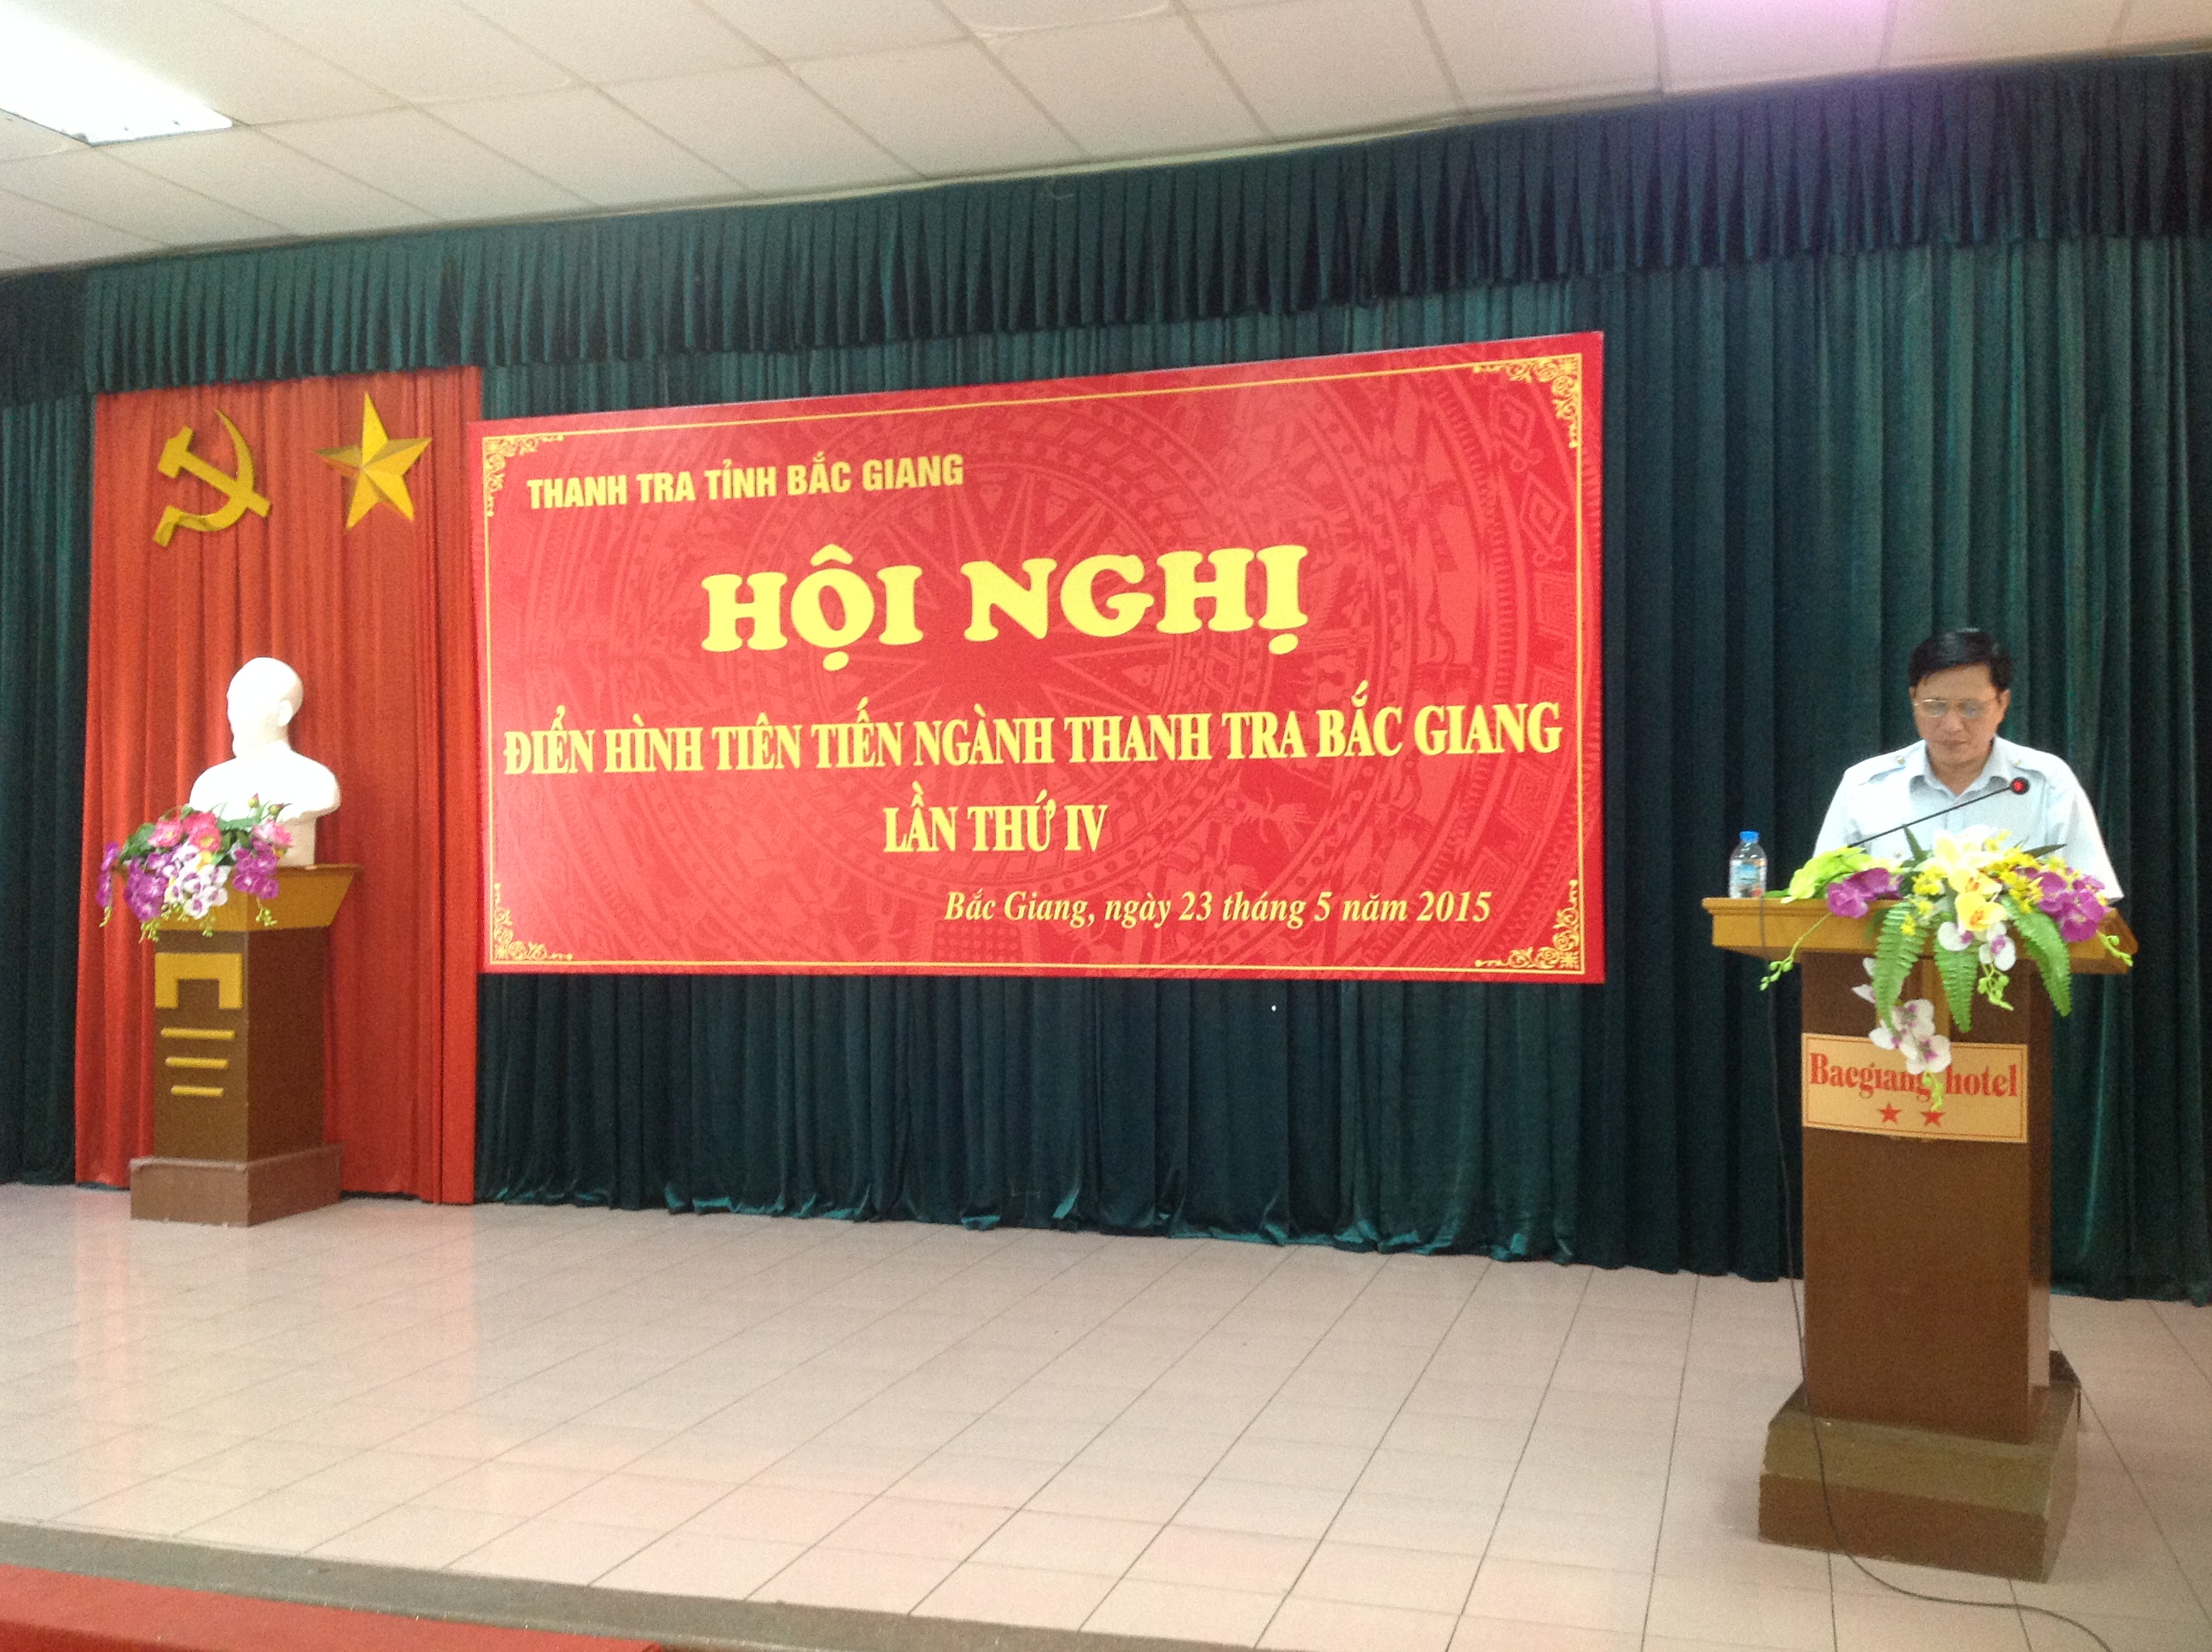 Hội nghị điển hình tiên tiến ngành Thanh tra tỉnh Bắc Giang giai đoạn 2010 - 2014 